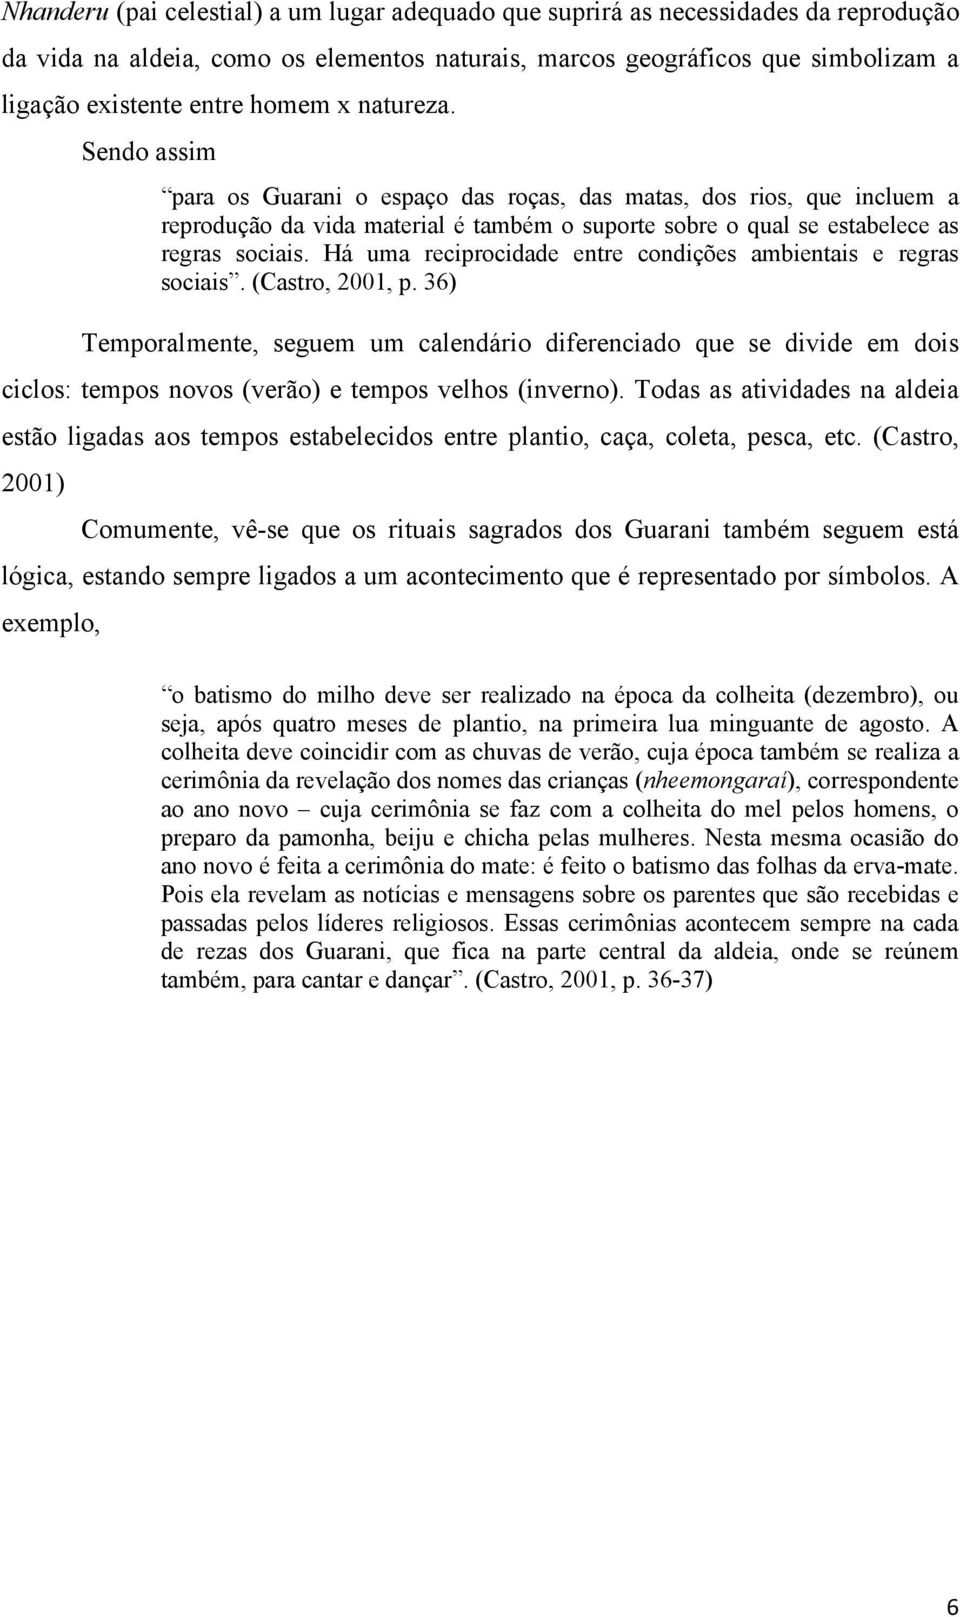 Há uma reciprocidade entre condições ambientais e regras sociais. (Castro, 2001, p.